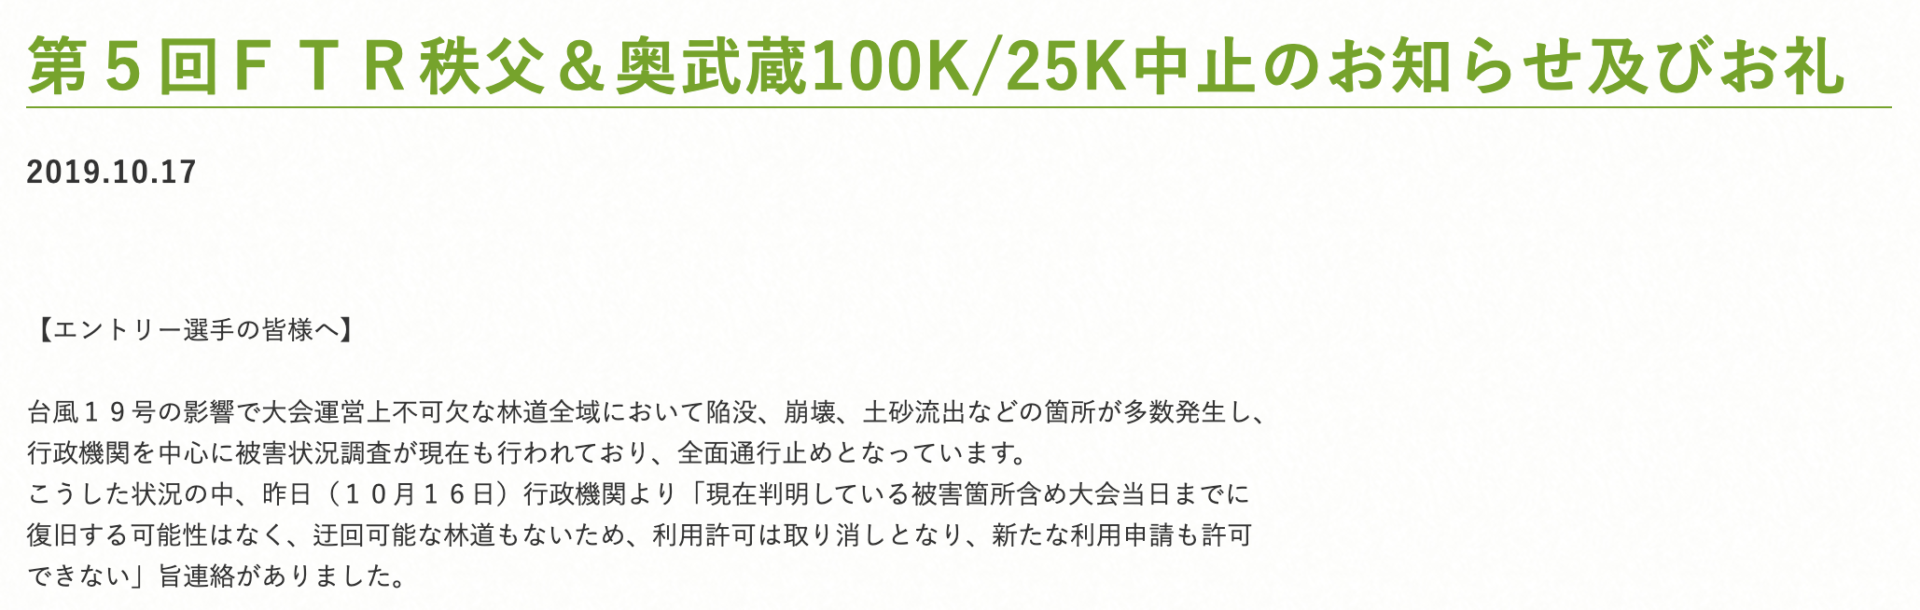 第５回ＦＴＲ秩父＆奥武蔵100K/25K中止のお知らせ